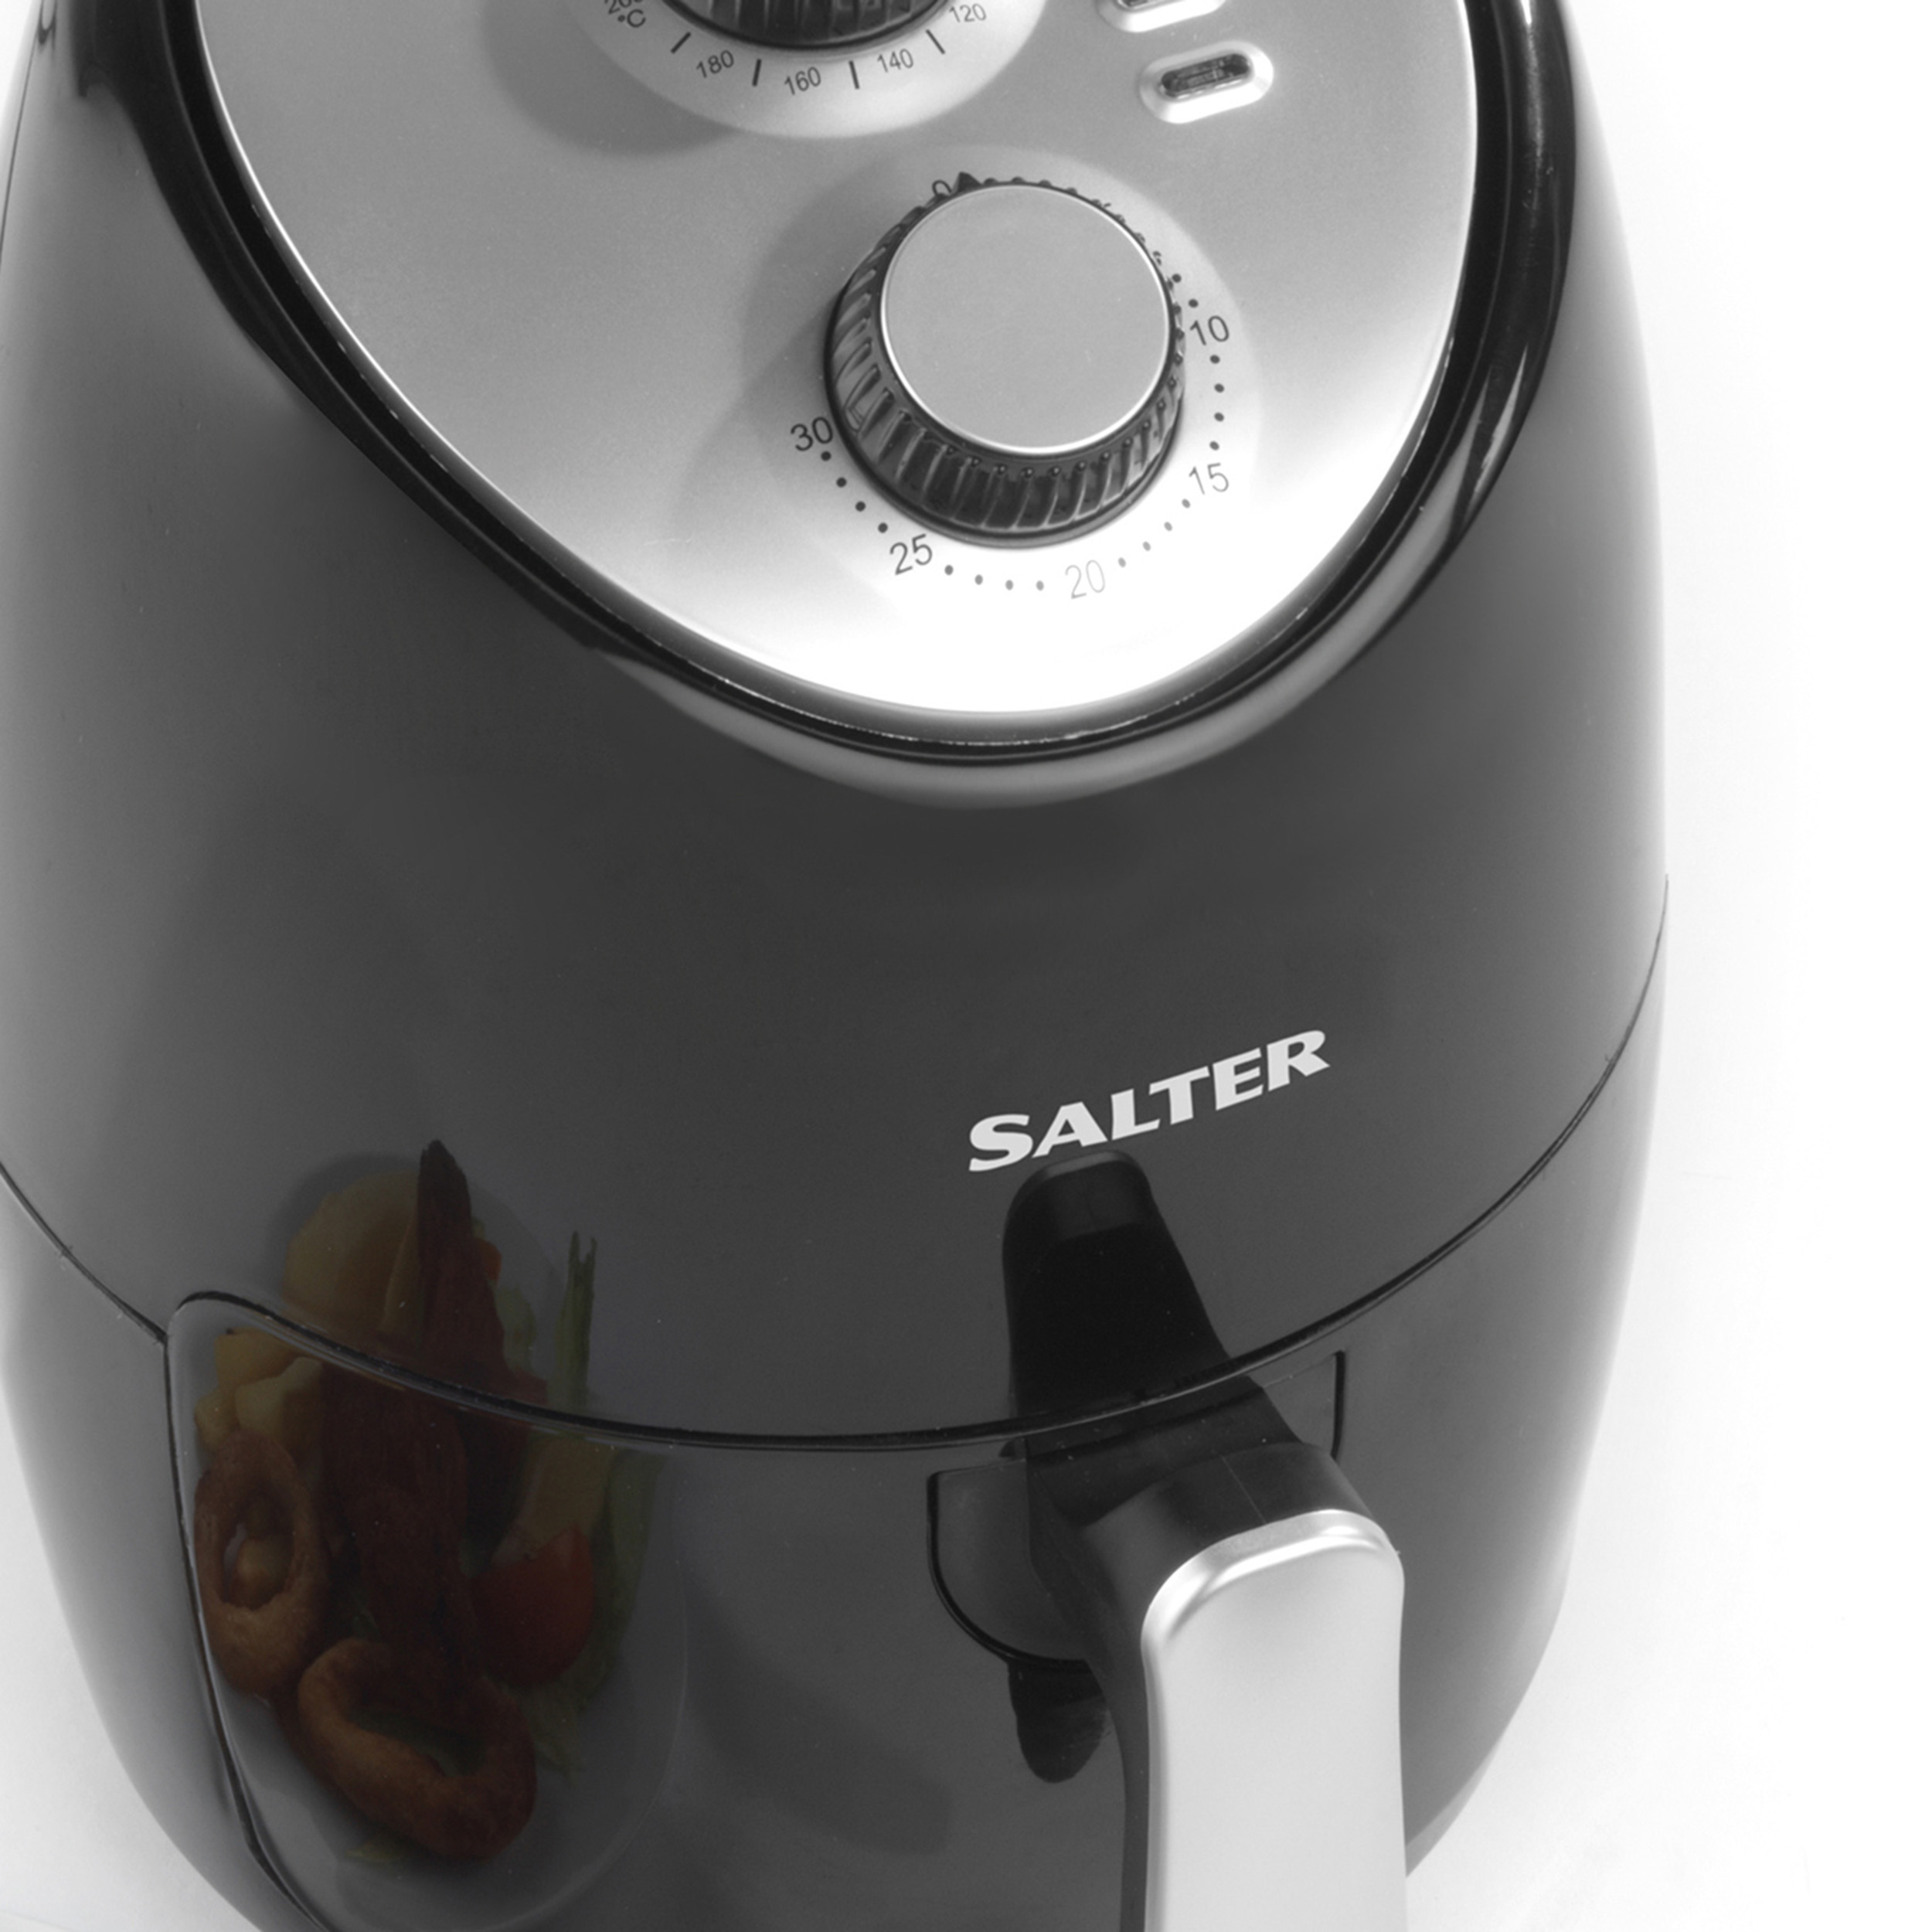 A Salter compact hot Air Fryer